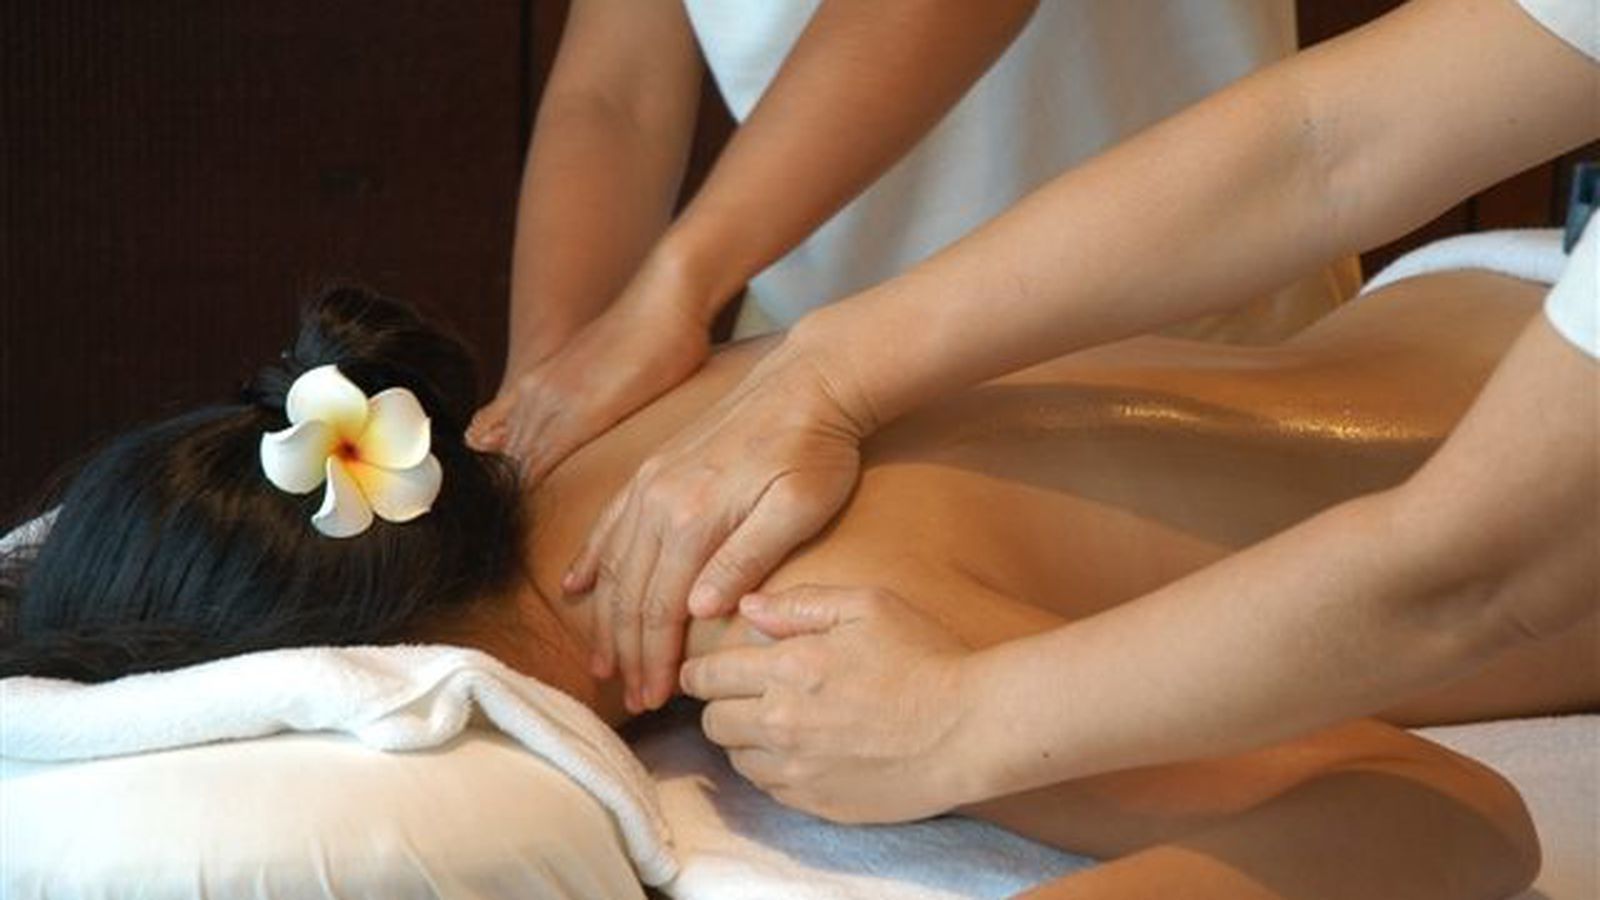 Mp4 massage. Королевский массаж. Ручной массаж. Тайский массаж в четыре руки. Традиционный Балийский массаж.